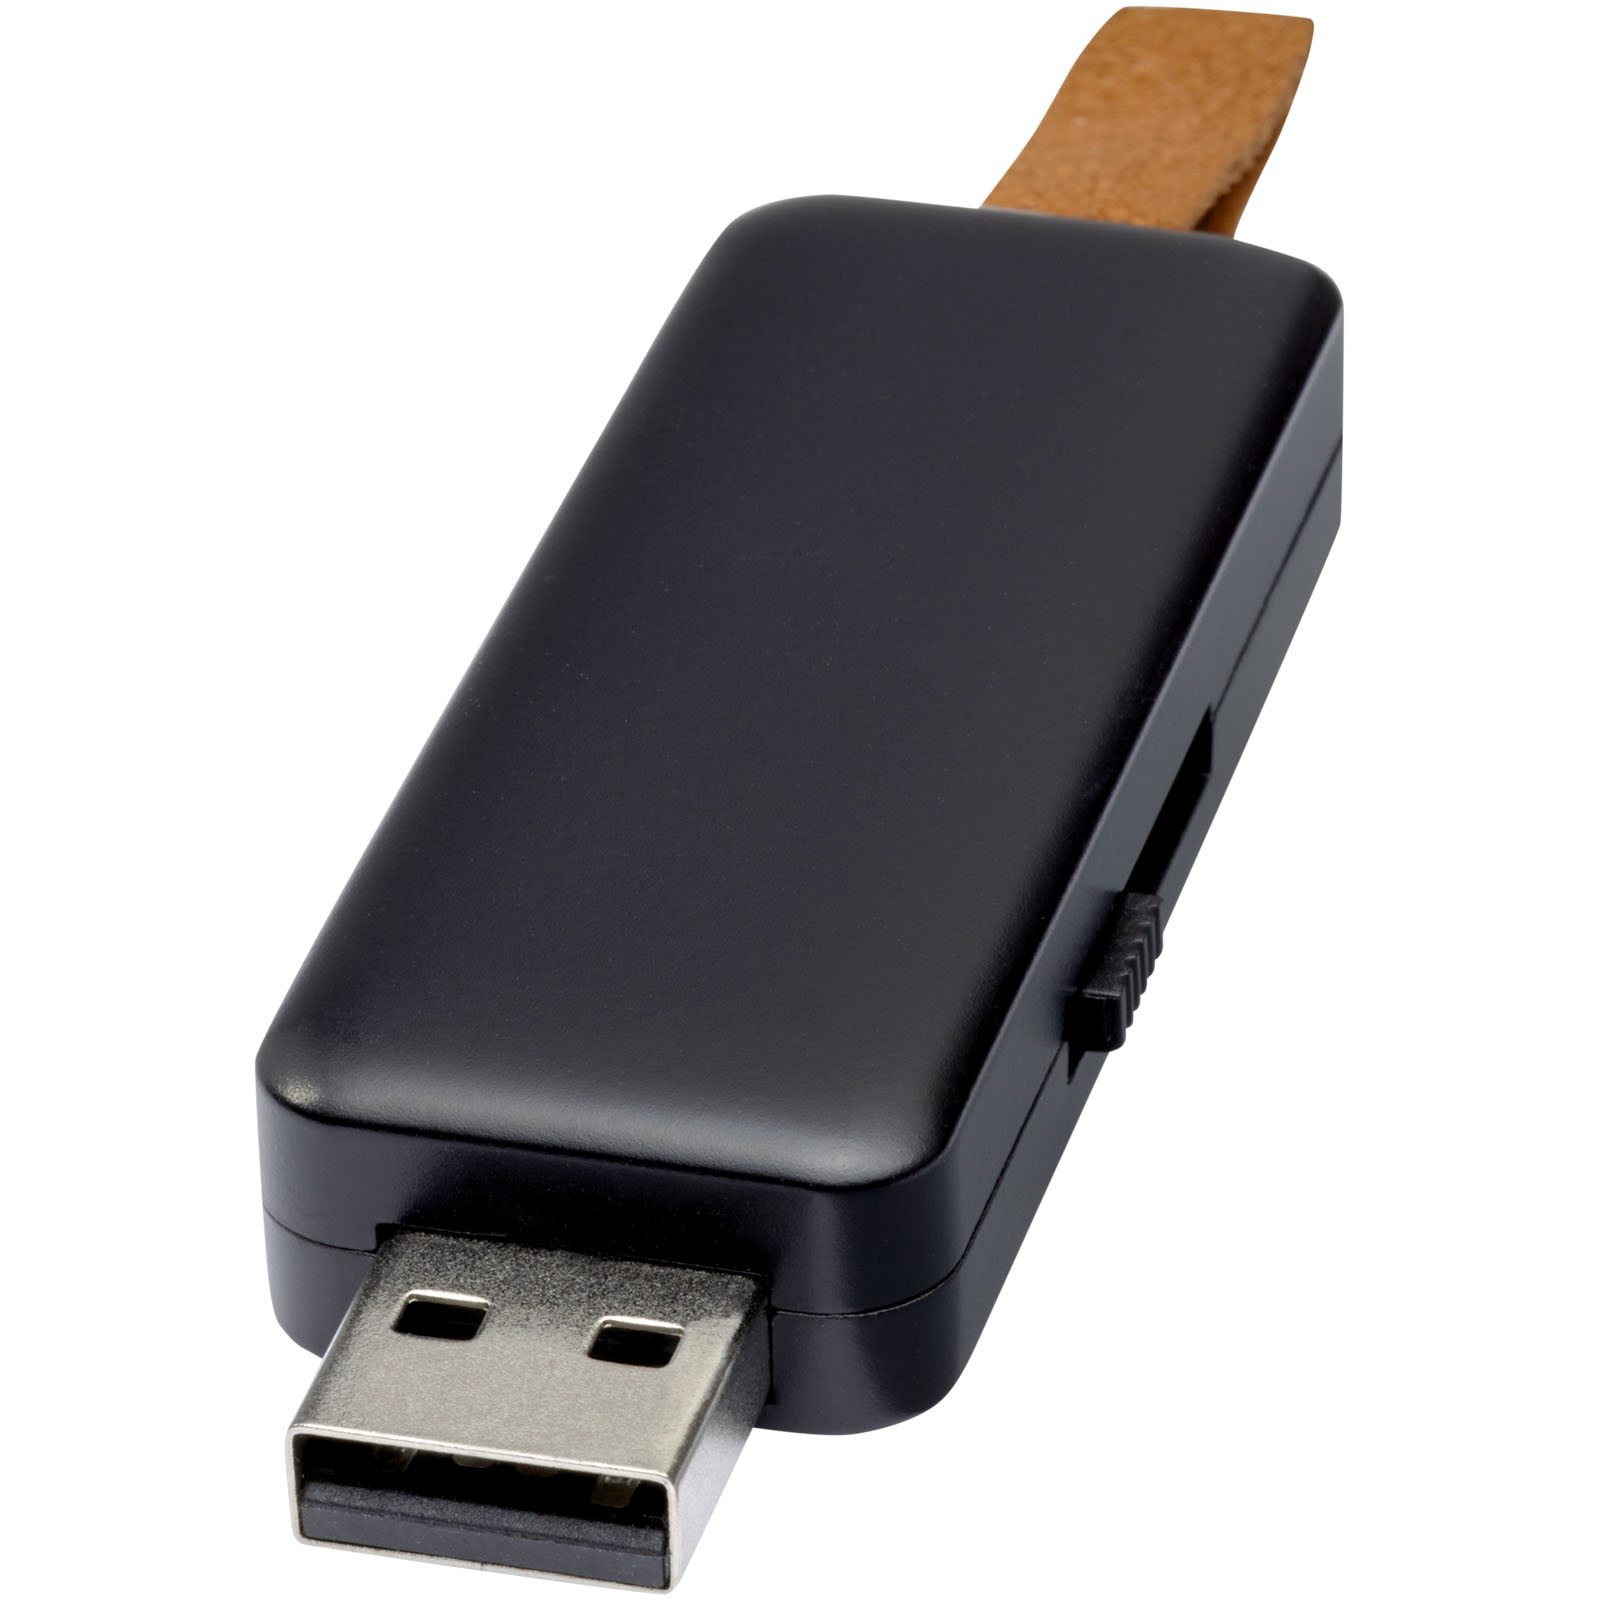 Clés USB - Clé USB lumineuse Gleam 8 Go